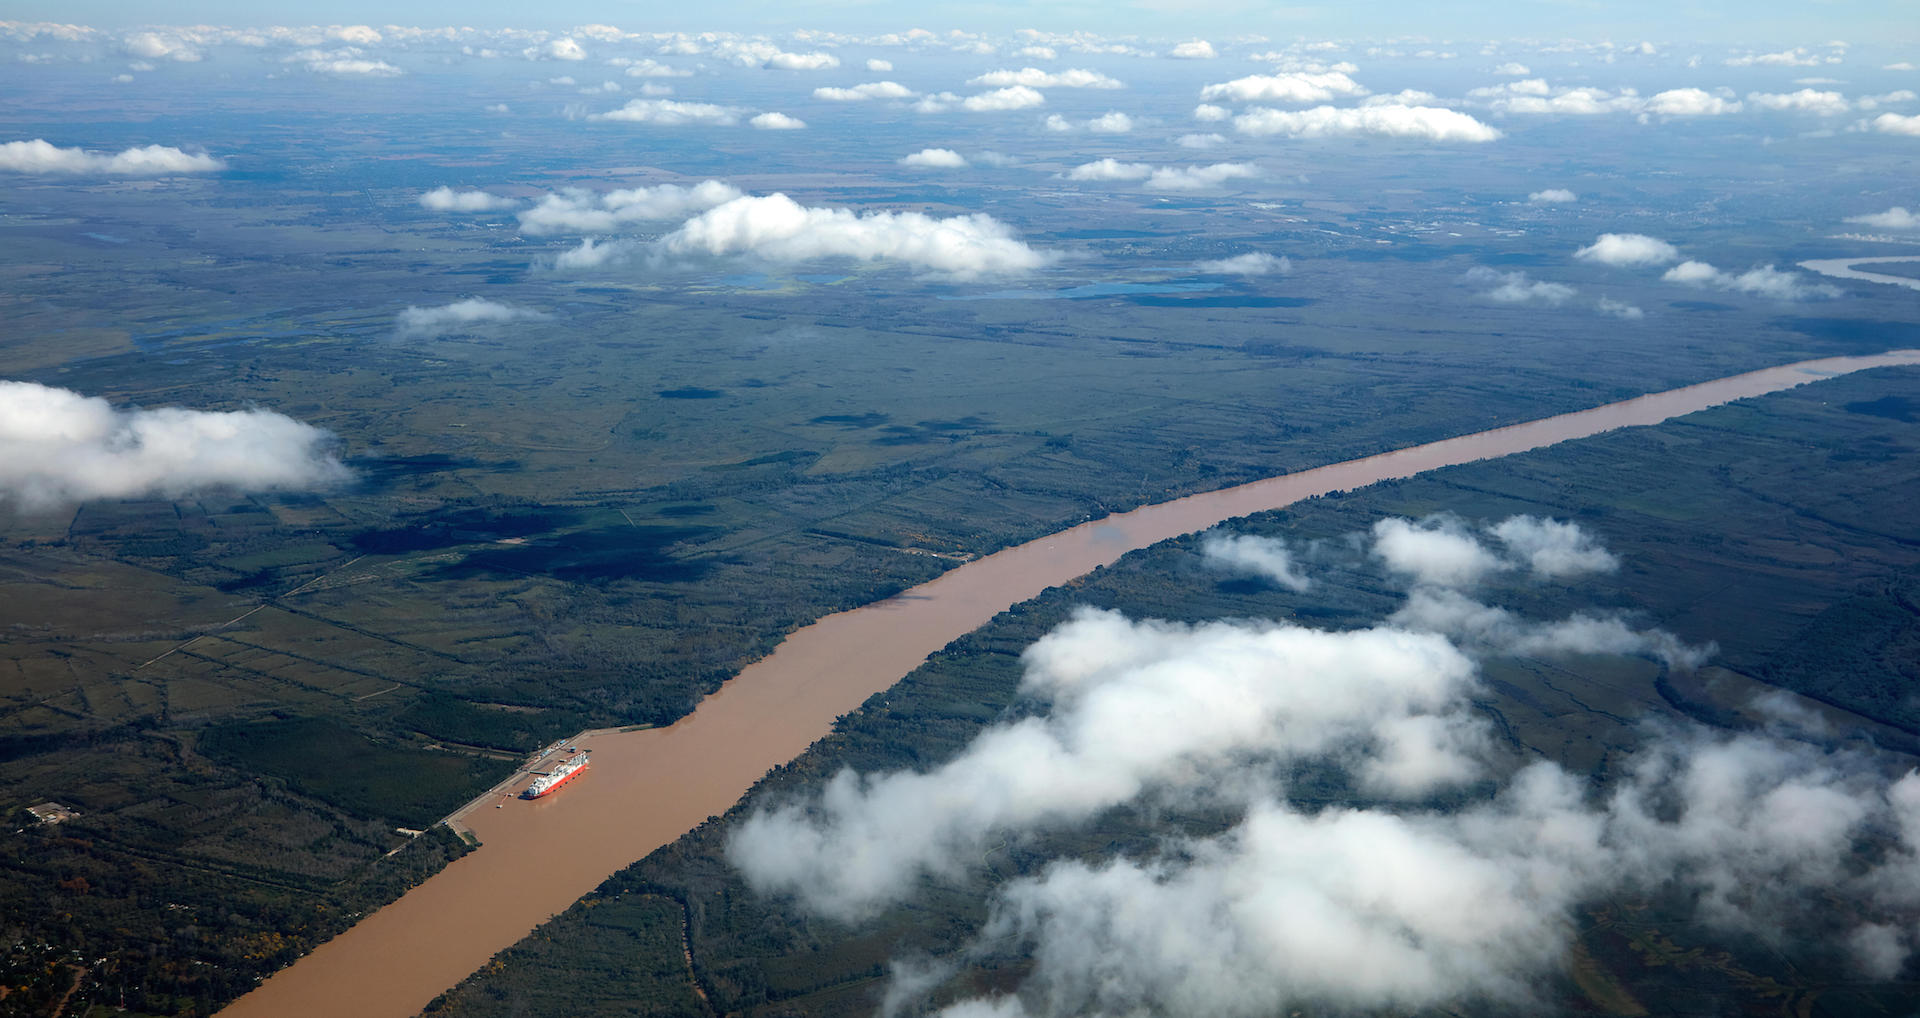 <p>El río Paraná, una importante ruta de transporte de granos, se encuentra en niveles no vistos desde la década de 1970 (imagen: Alamy)</p>